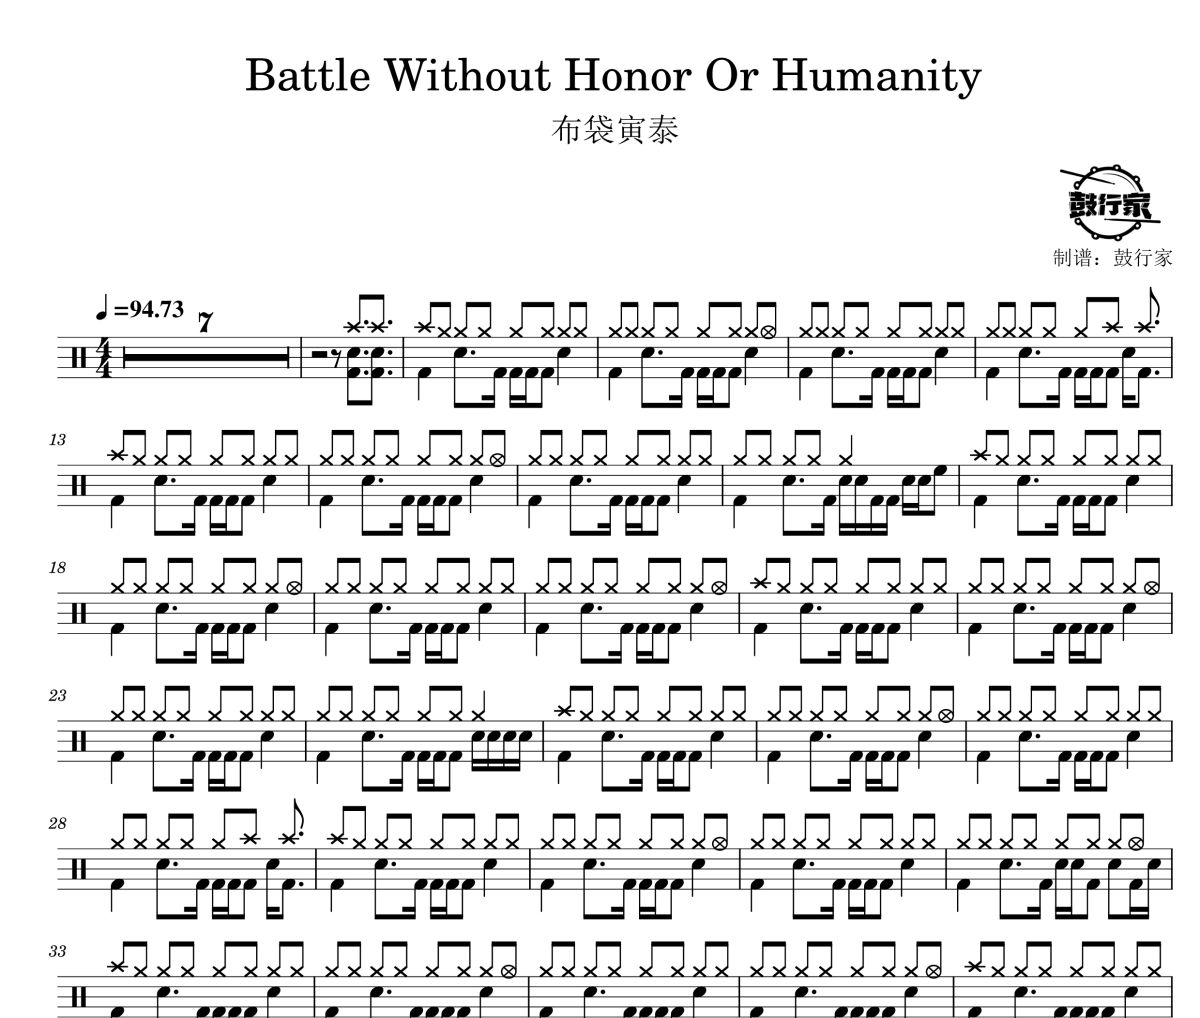 布袋寅泰-Battle Without Honor Or Humanity架子鼓谱 鼓行家制谱